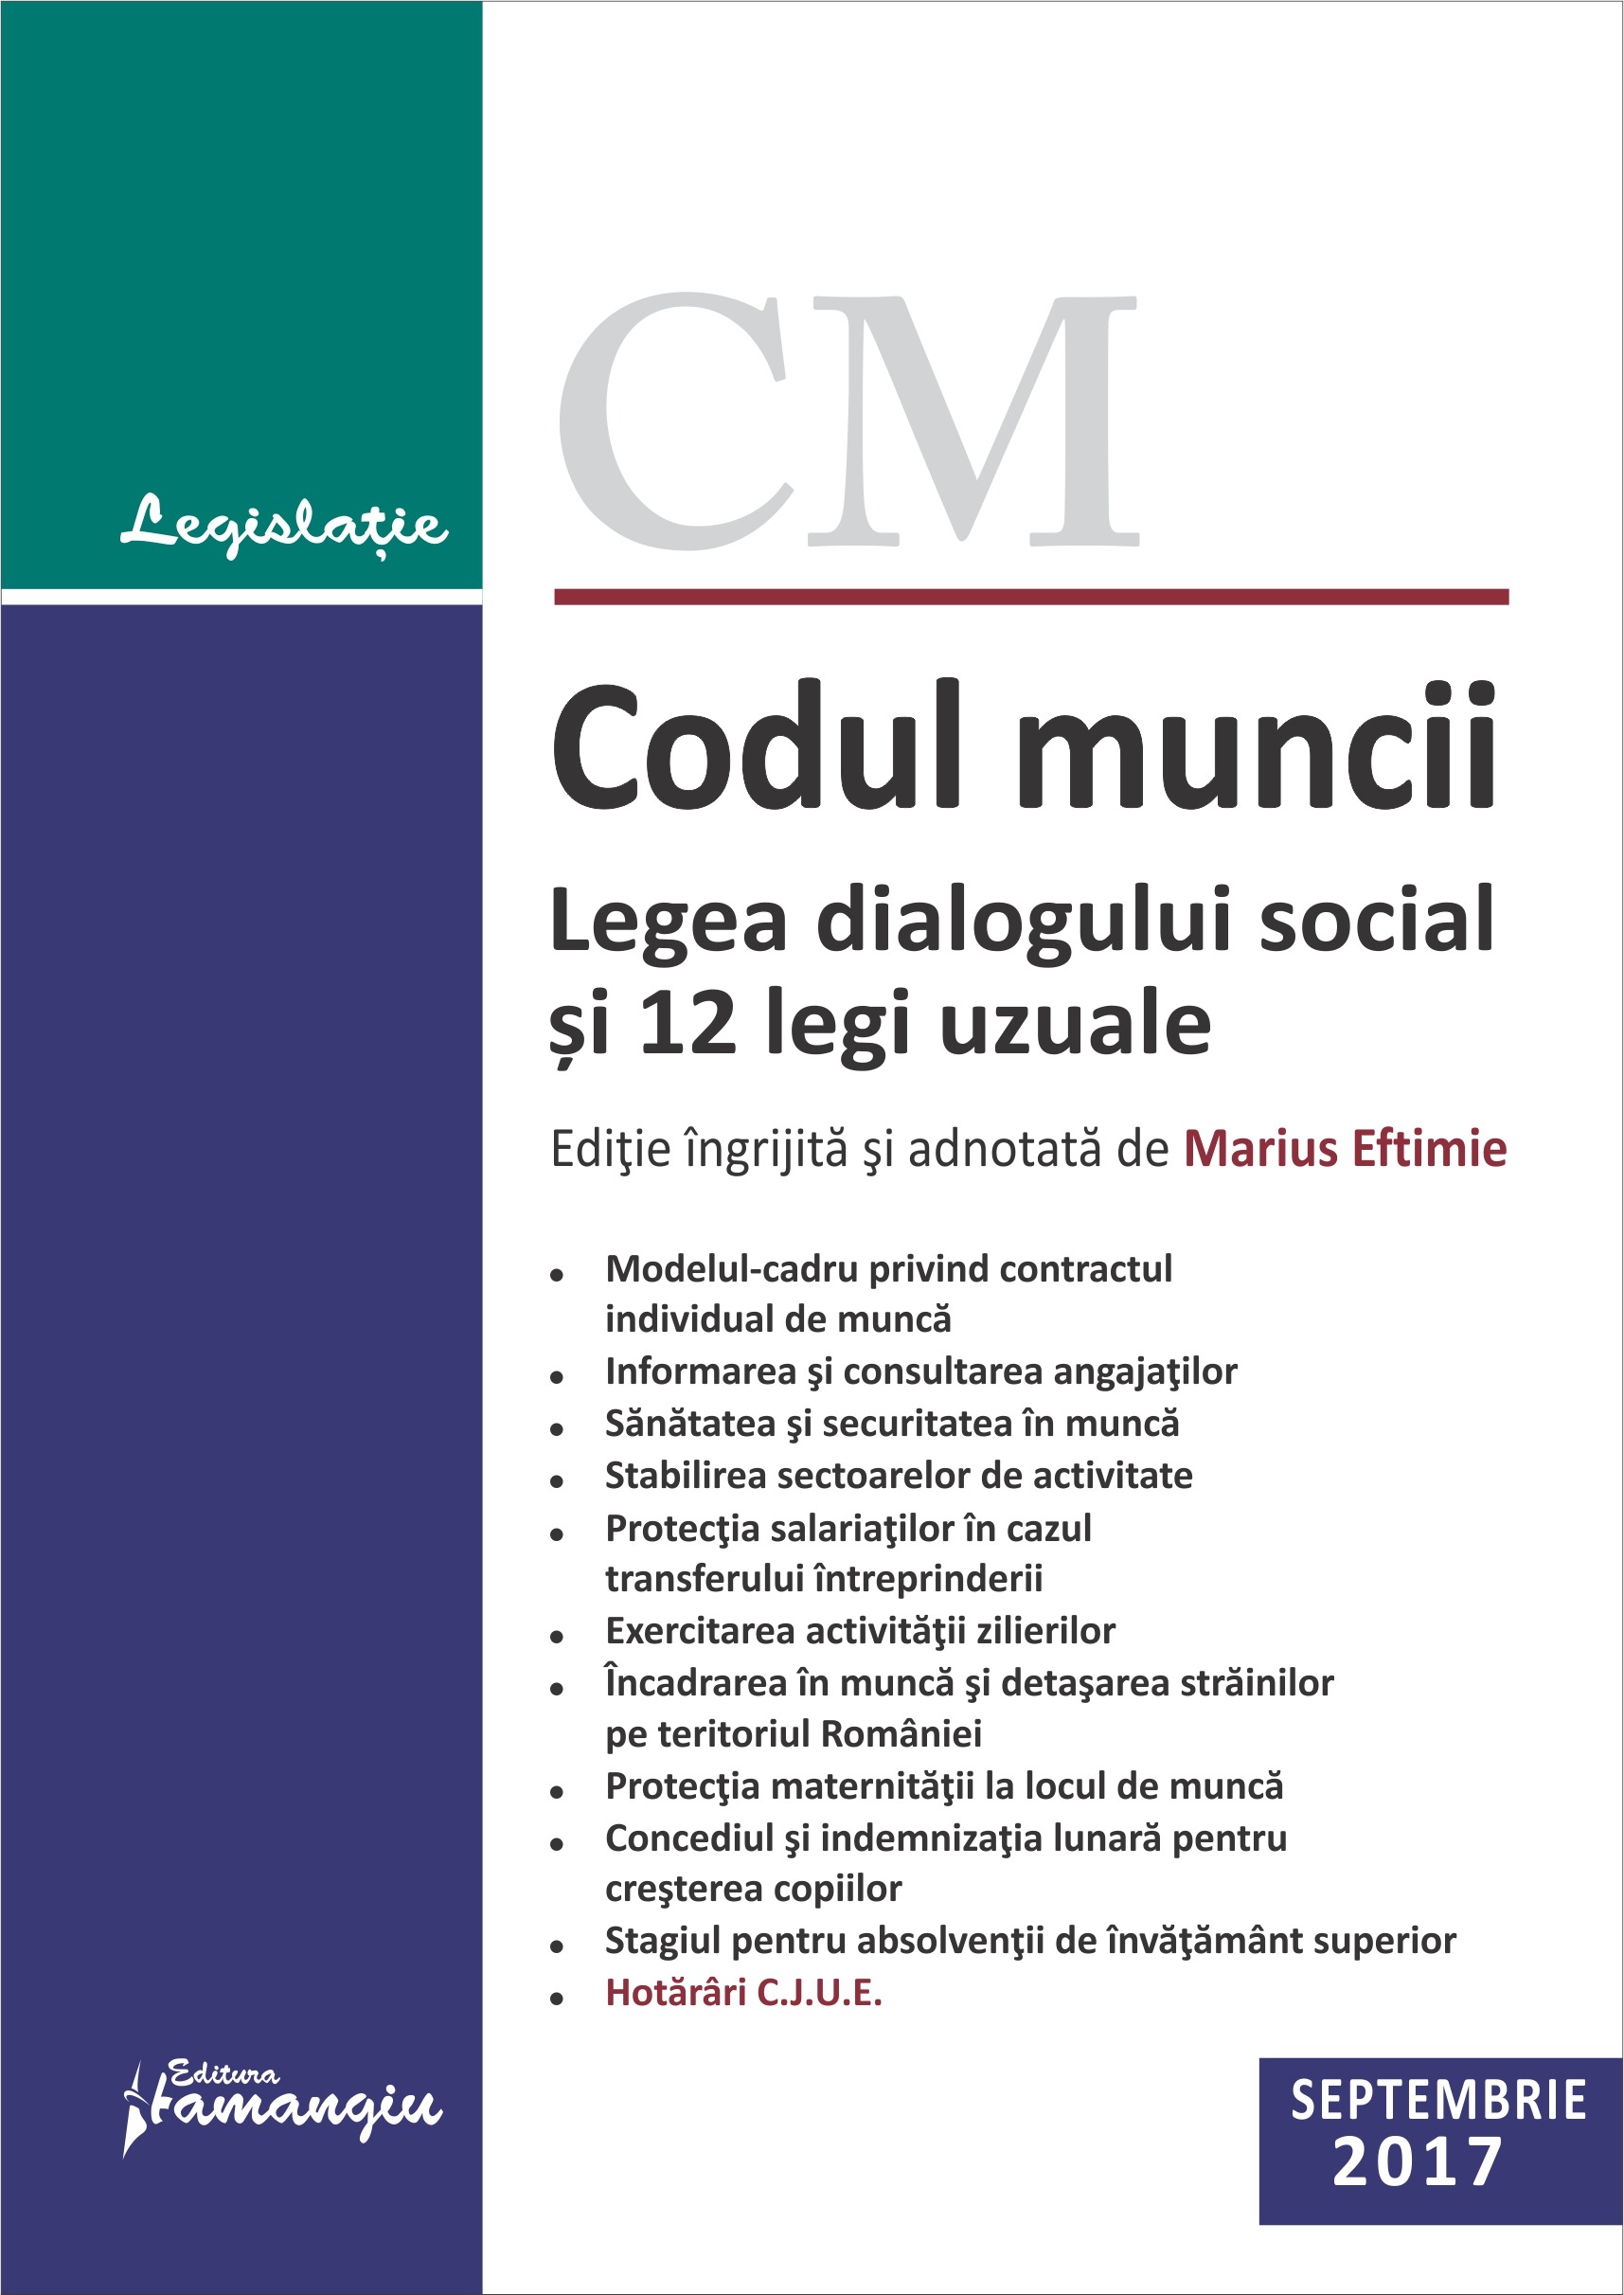 Codul muncii. Legea dialogului social si 12 legi uzuale Septembrie 2017